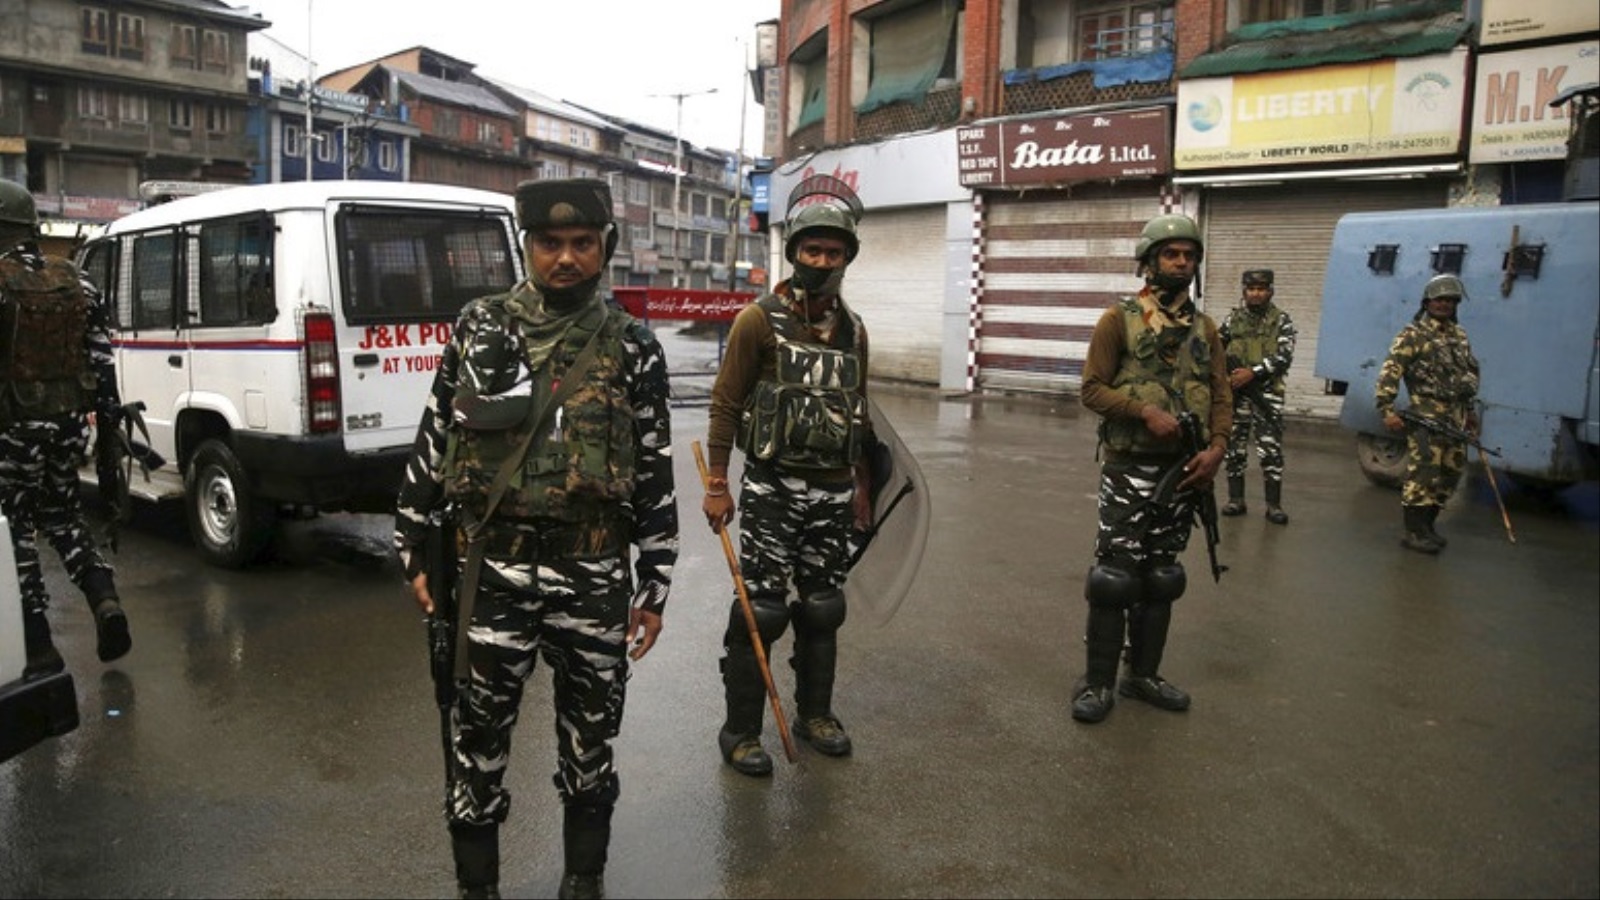 ‪عناصر من القوات شبه العسكرية الهندية في أحد شوارع مدينة سريناغار‬ عناصر من القوات شبه العسكرية الهندية في أحد شوارع مدينة سريناغار (الأوروبية)